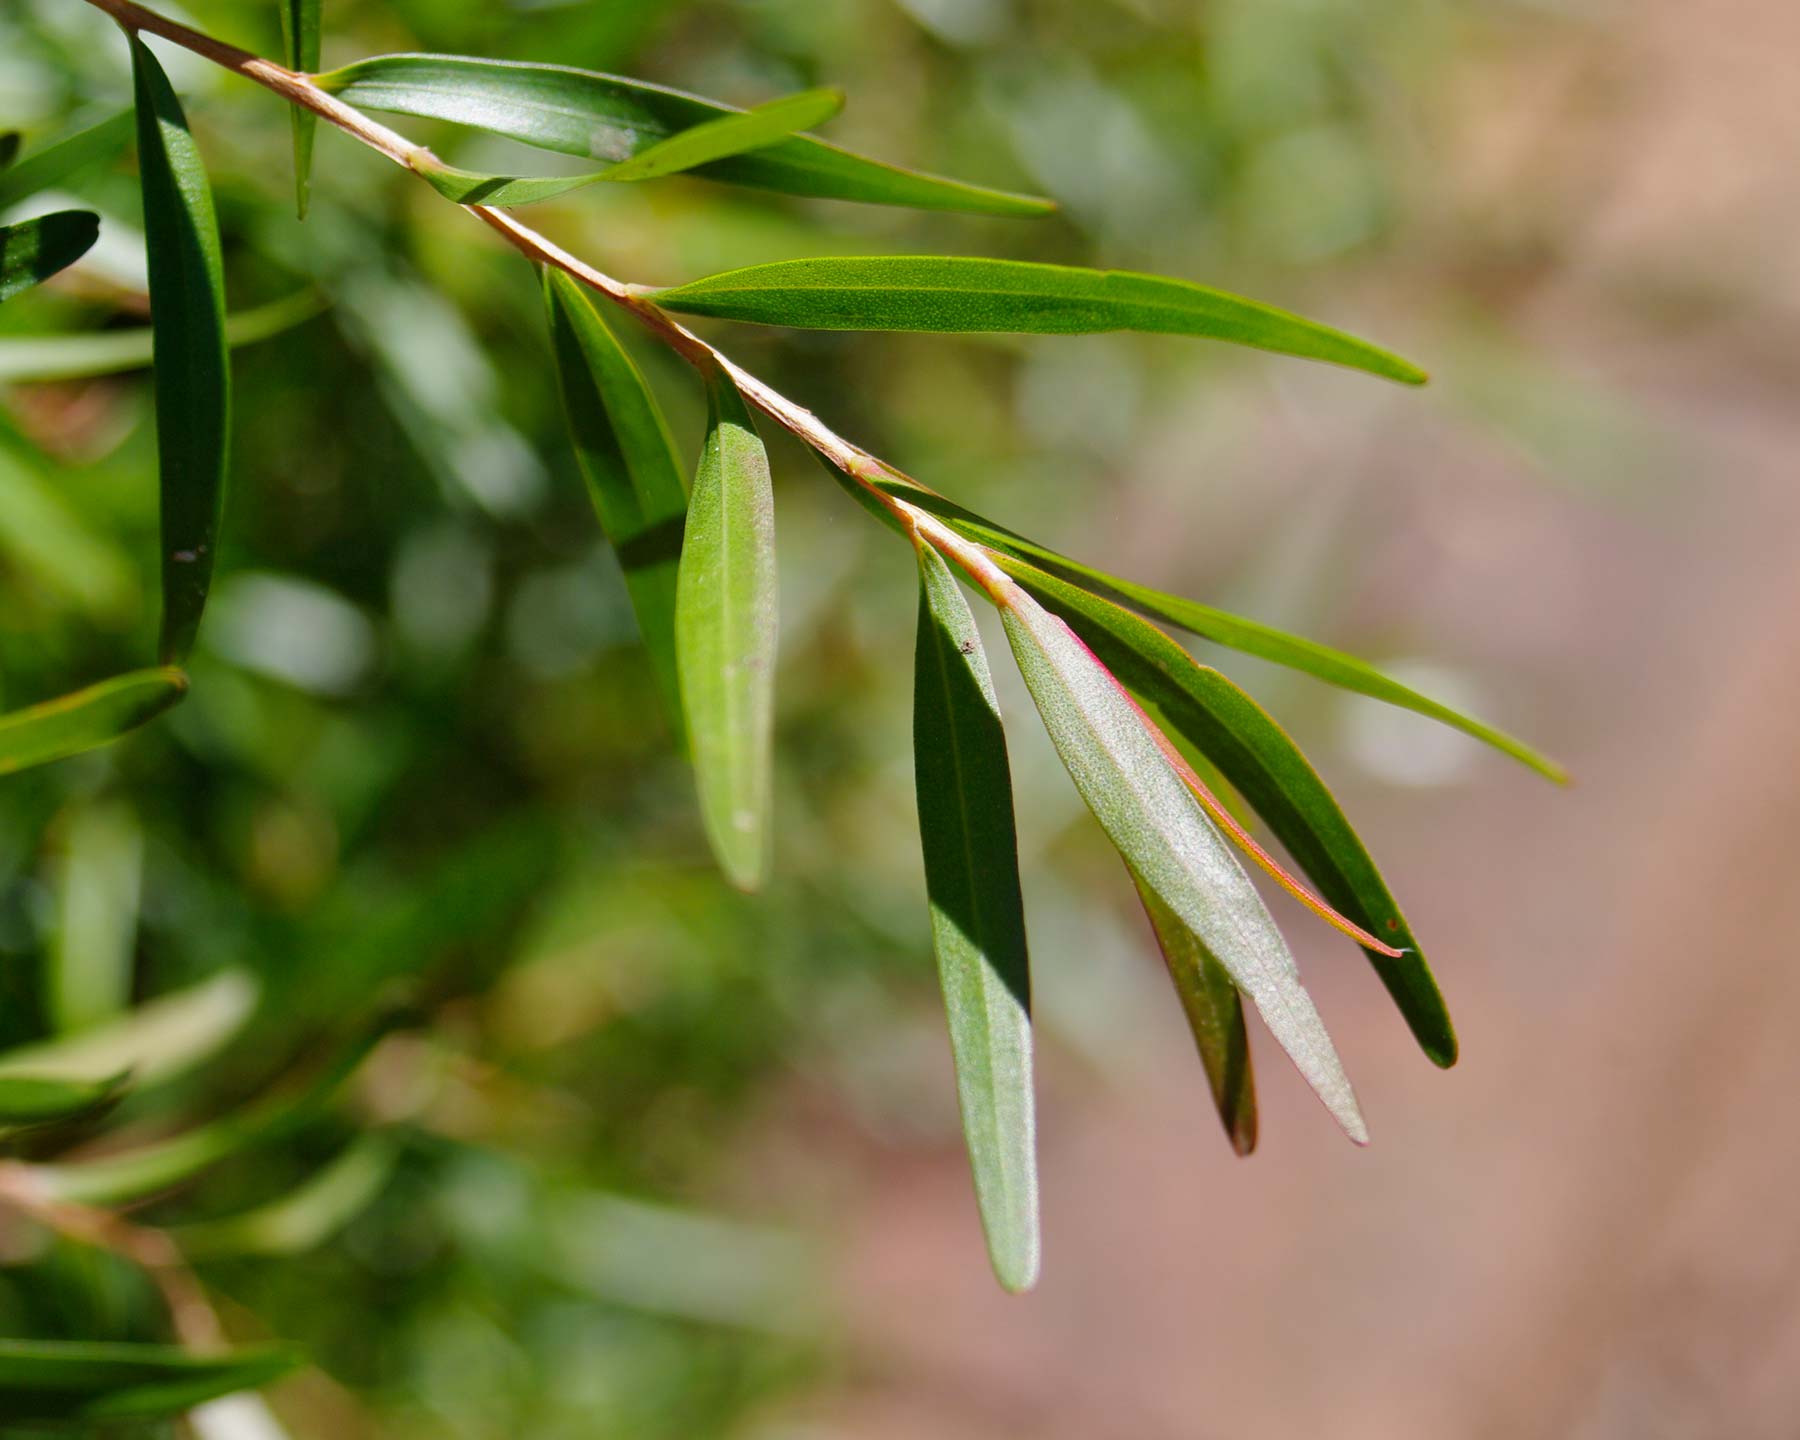 Leptospermum petersonii - lemon scented tea tree